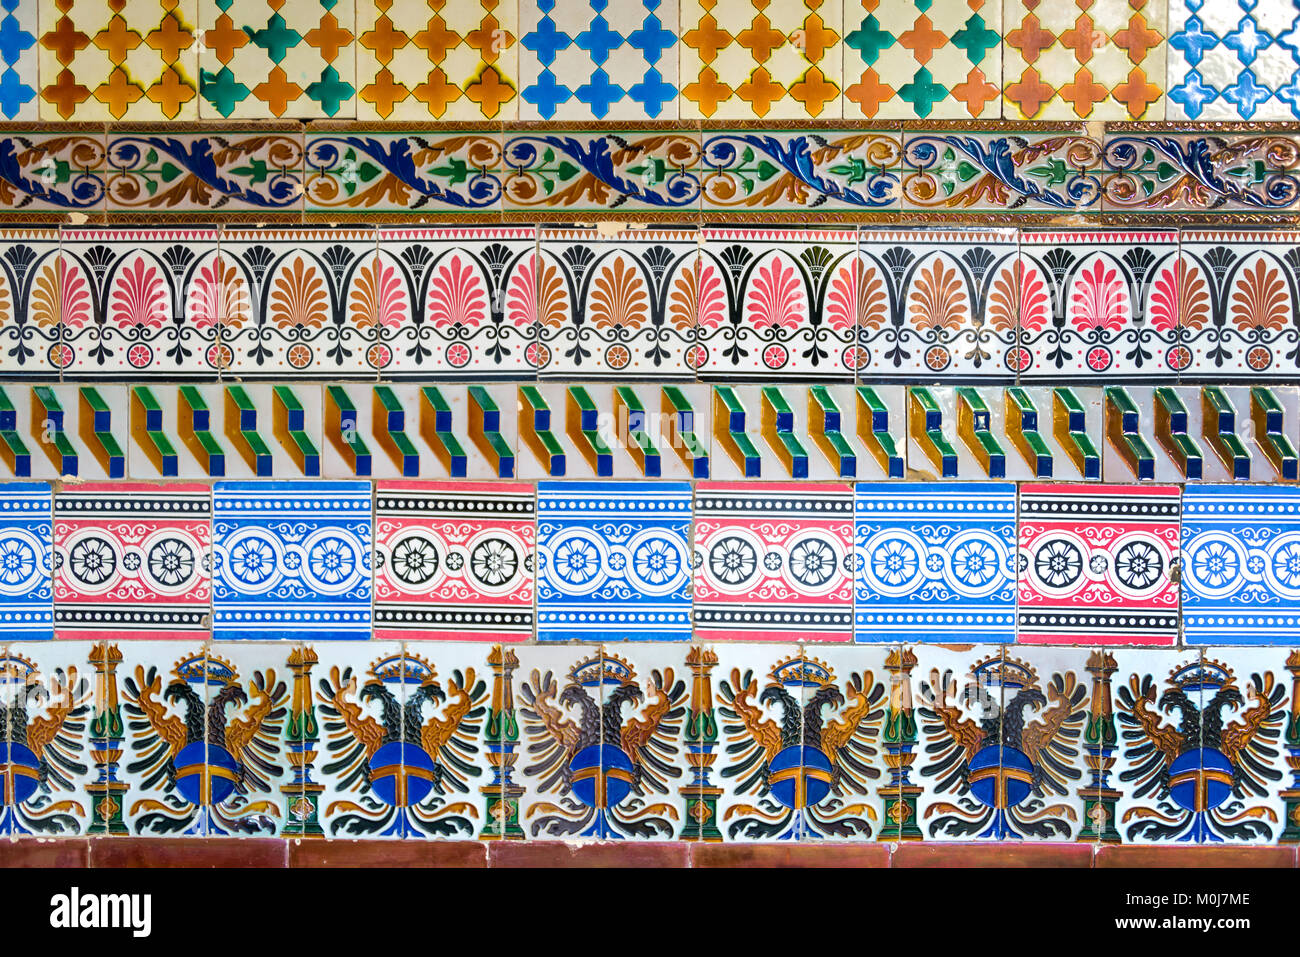 Mosaïque d'azulejos colorés anciens (carreaux de céramique espagnole) sur un mur Banque D'Images